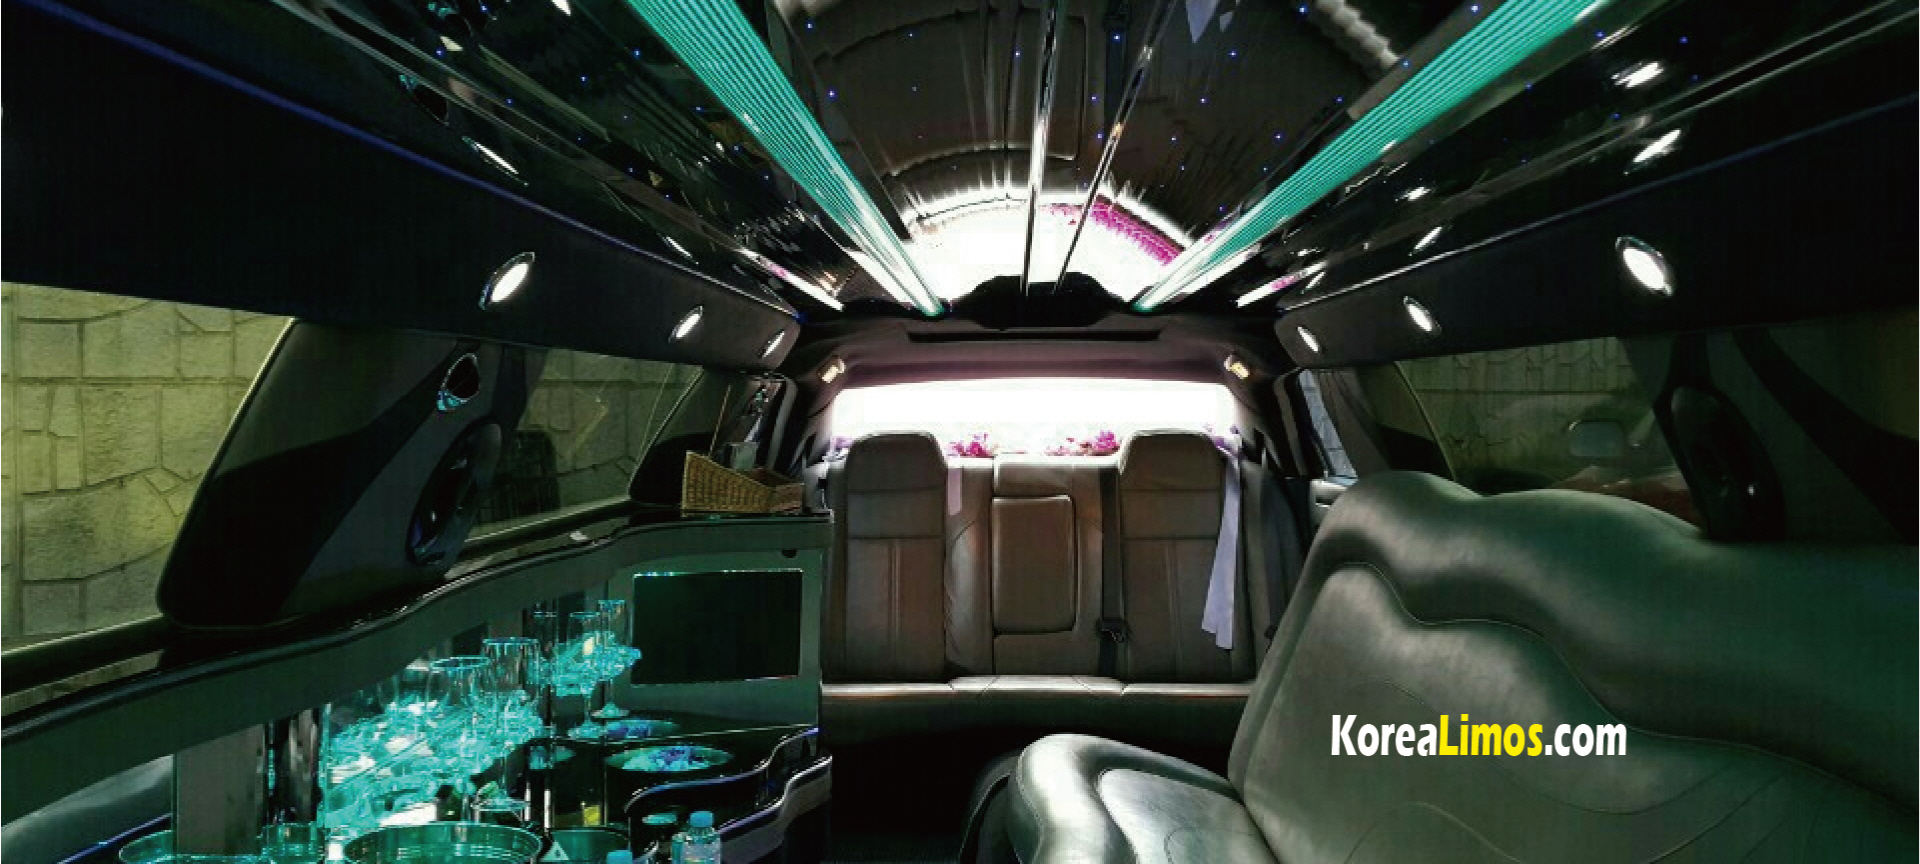 korea limousine service